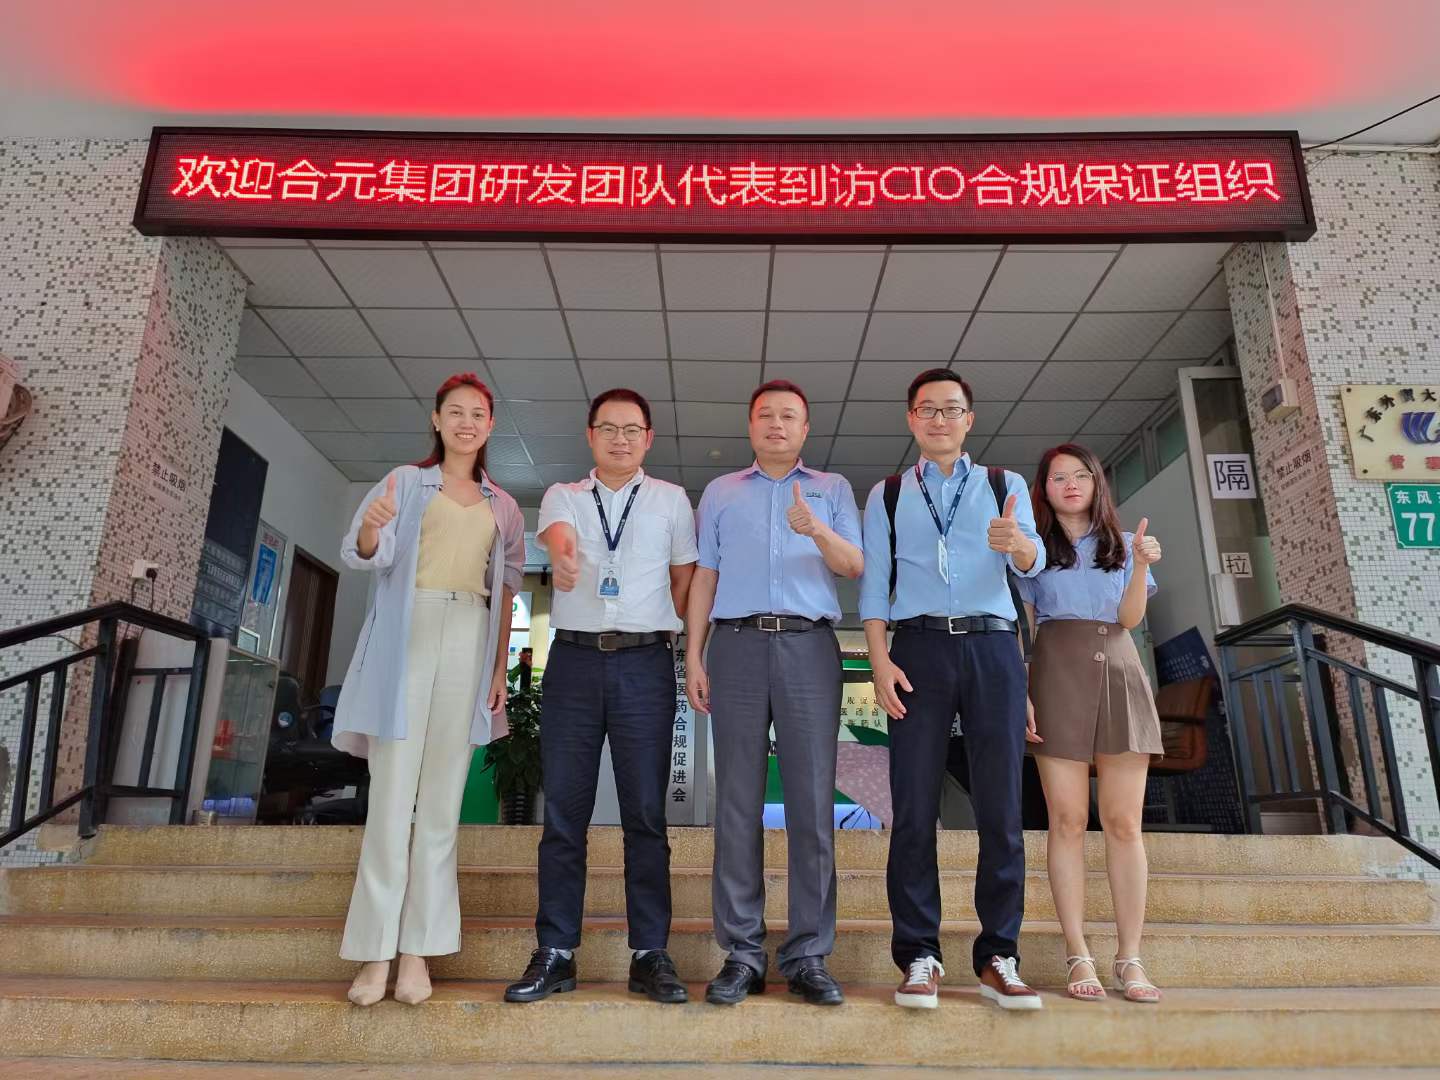 欢迎合元集团李博士、卢博士到访CIO合规保证组织！